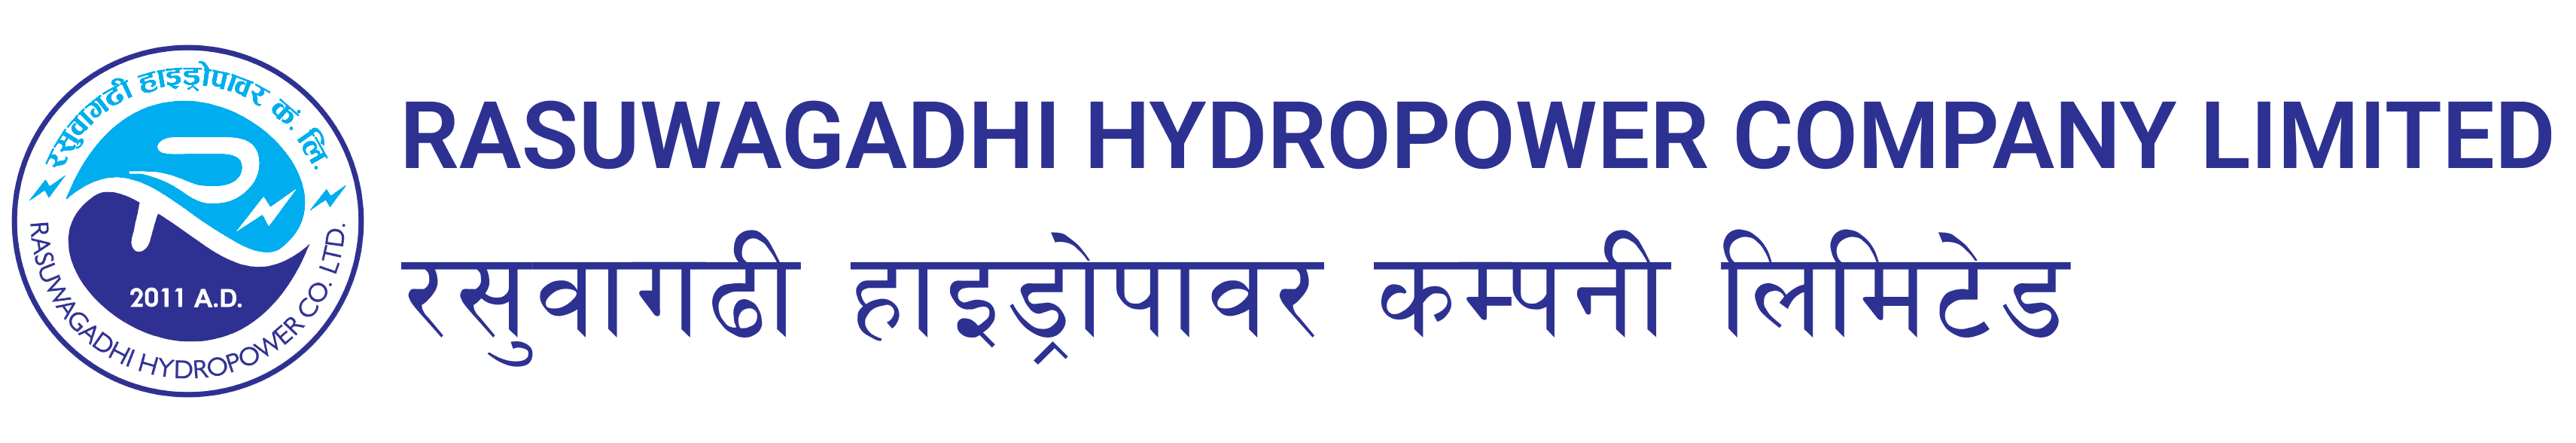 Rasuwagadhi Hydropower Company Limited रसुवागढी हाइड्रोपावर कम्पनी लिमिटेड